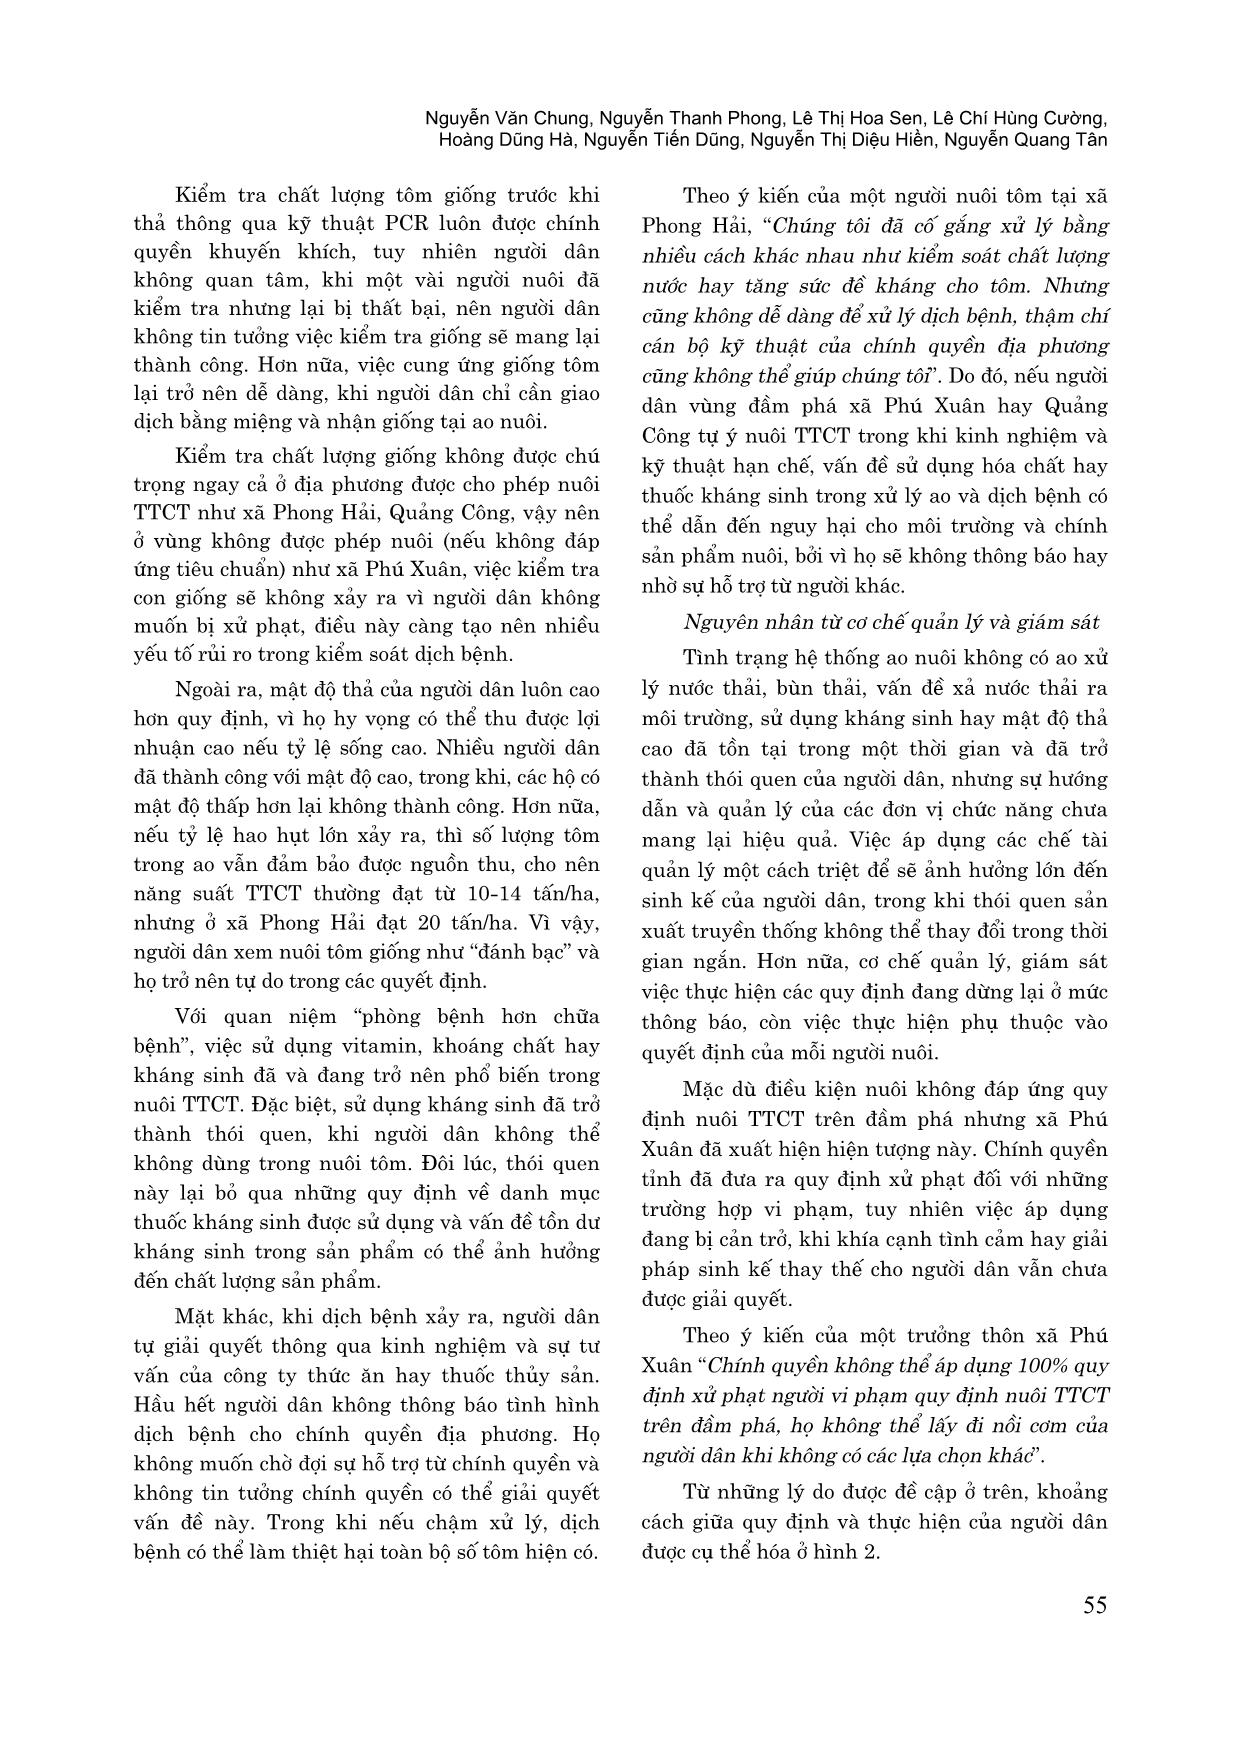 Khoảng cách giữa quy định và thực hiện trong nuôi tôm thẻ chân trắng tại Thừa Thiên Huế trang 6